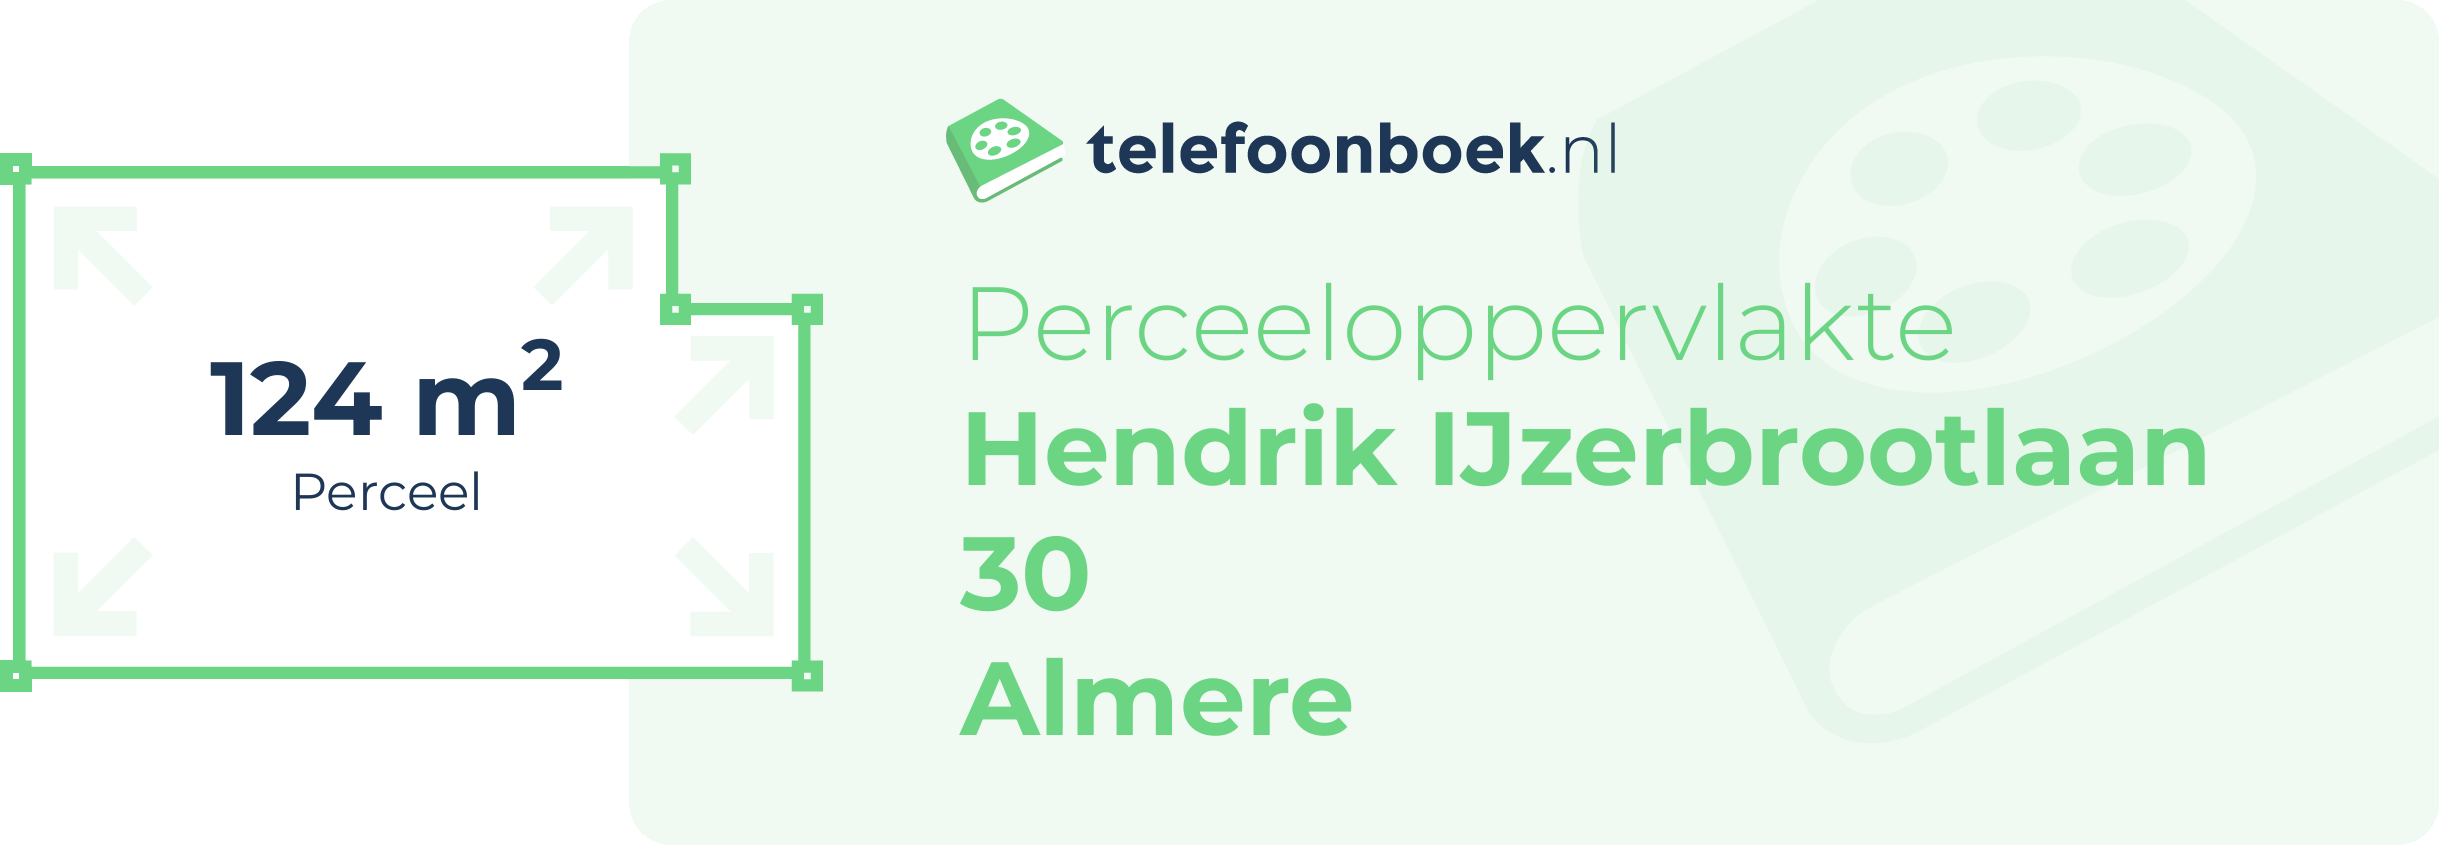 Perceeloppervlakte Hendrik IJzerbrootlaan 30 Almere